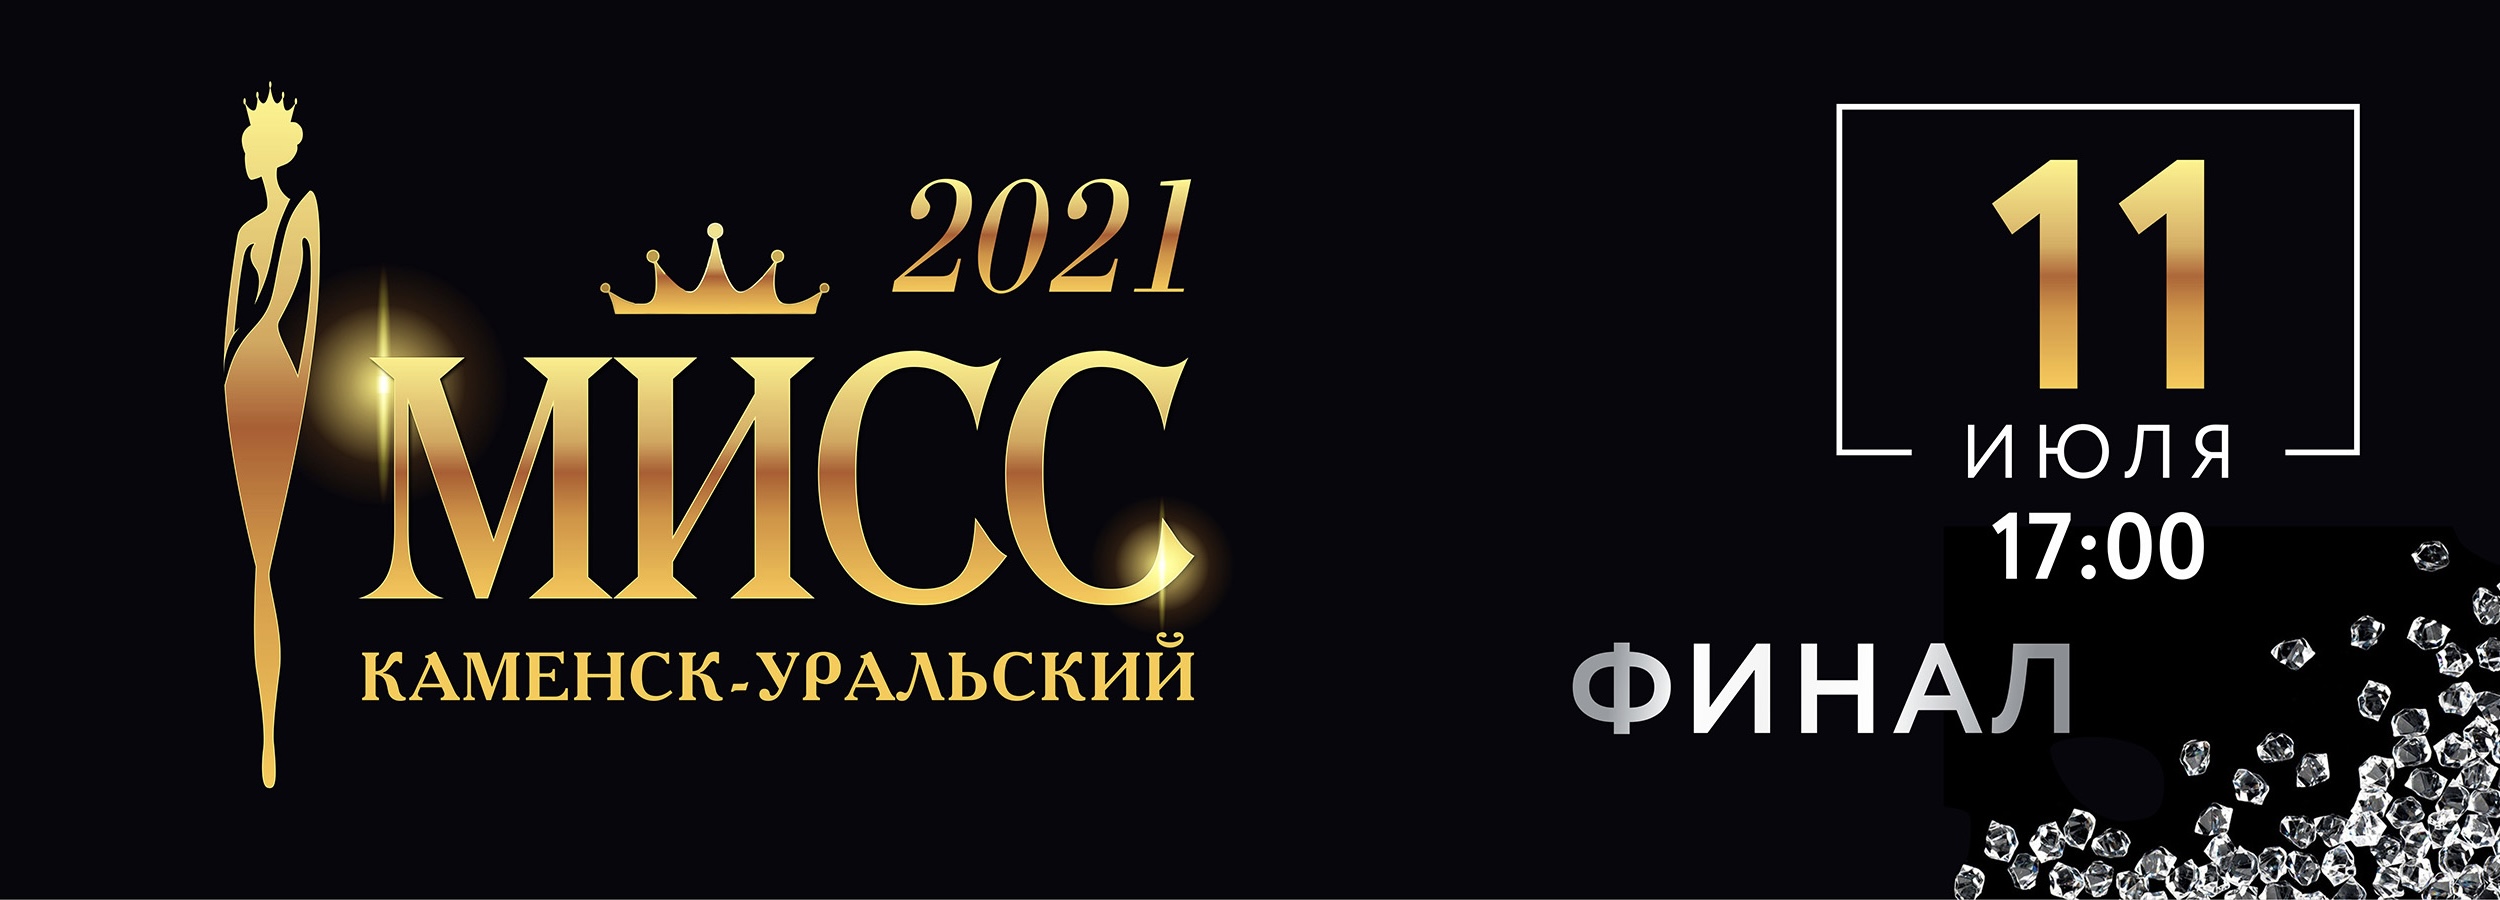 logo muss2021